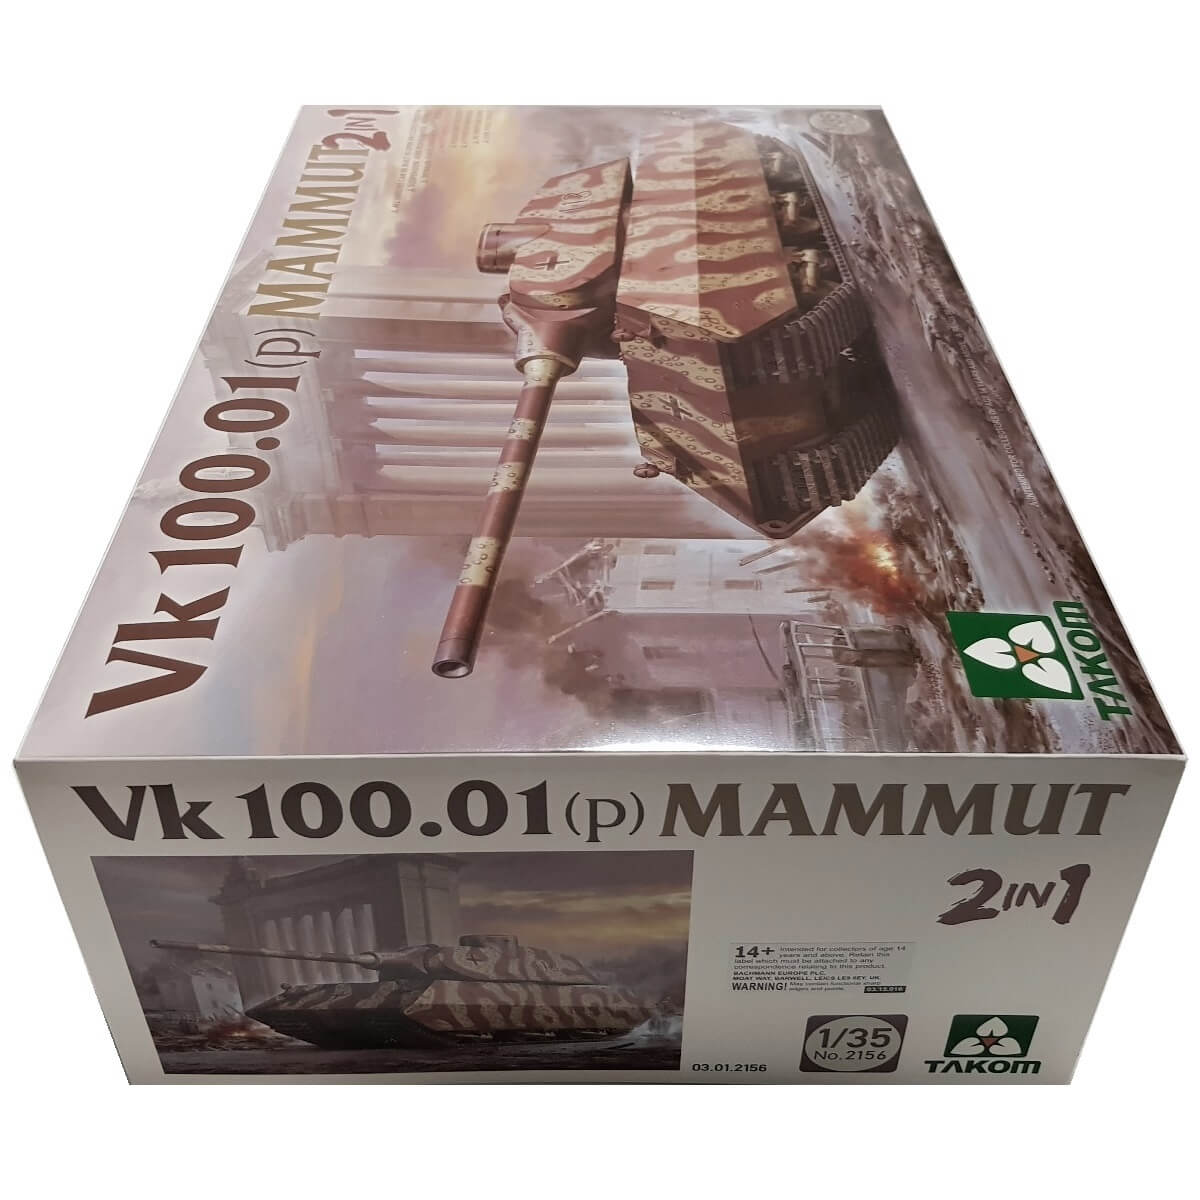 1:35 VK 100.01 (p) Mammut - TAKOM